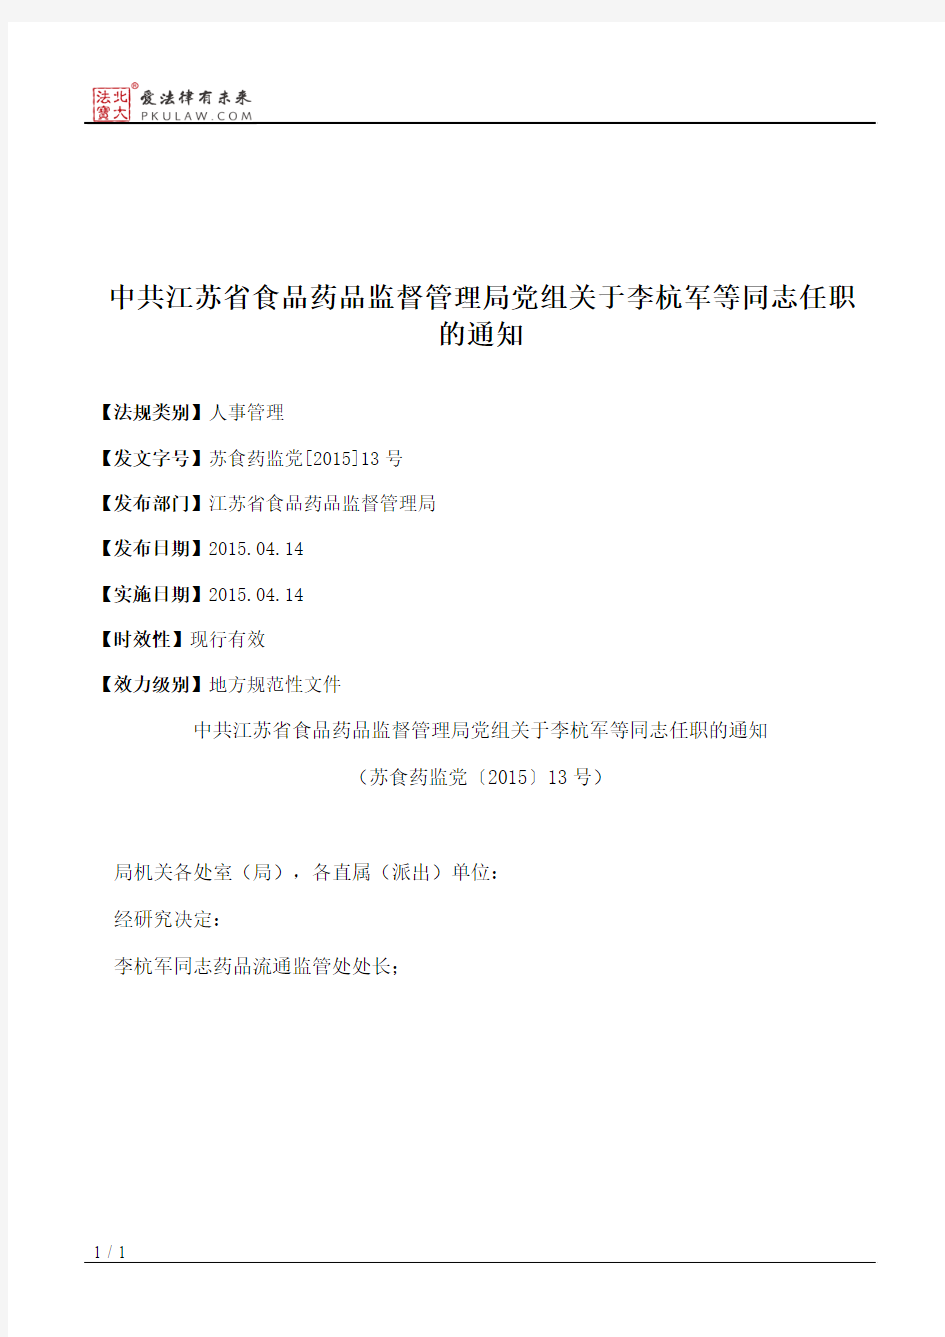 中共江苏省食品药品监督管理局党组关于李杭军等同志任职的通知